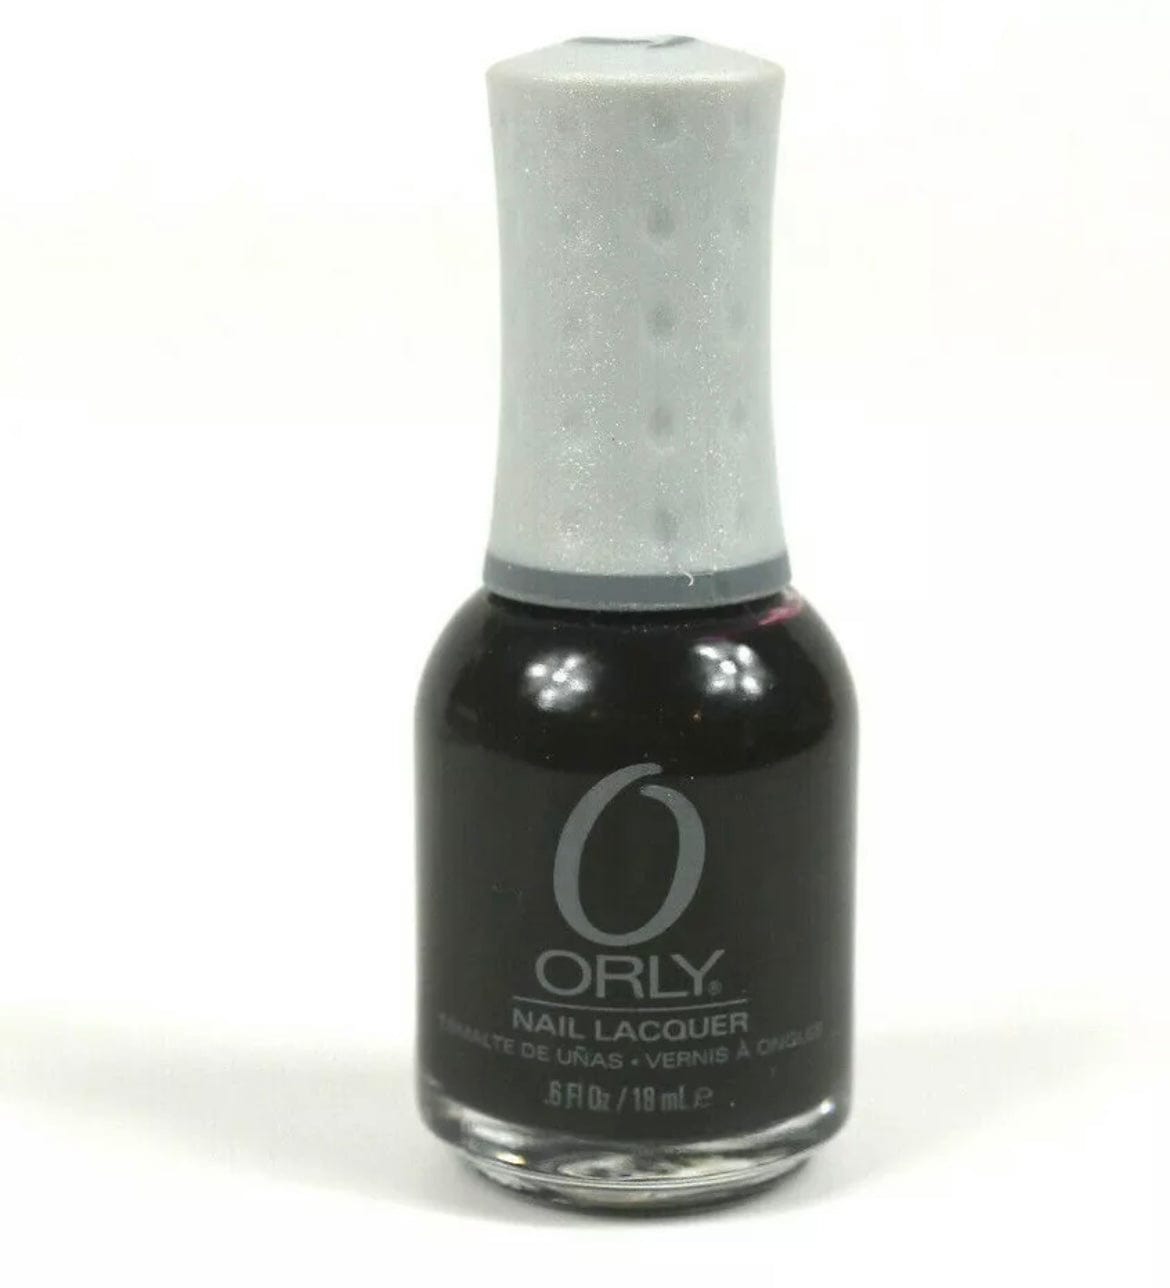 Orly Nail Lacquer Naughty Or Nice 0.6 oz Nail Polishes